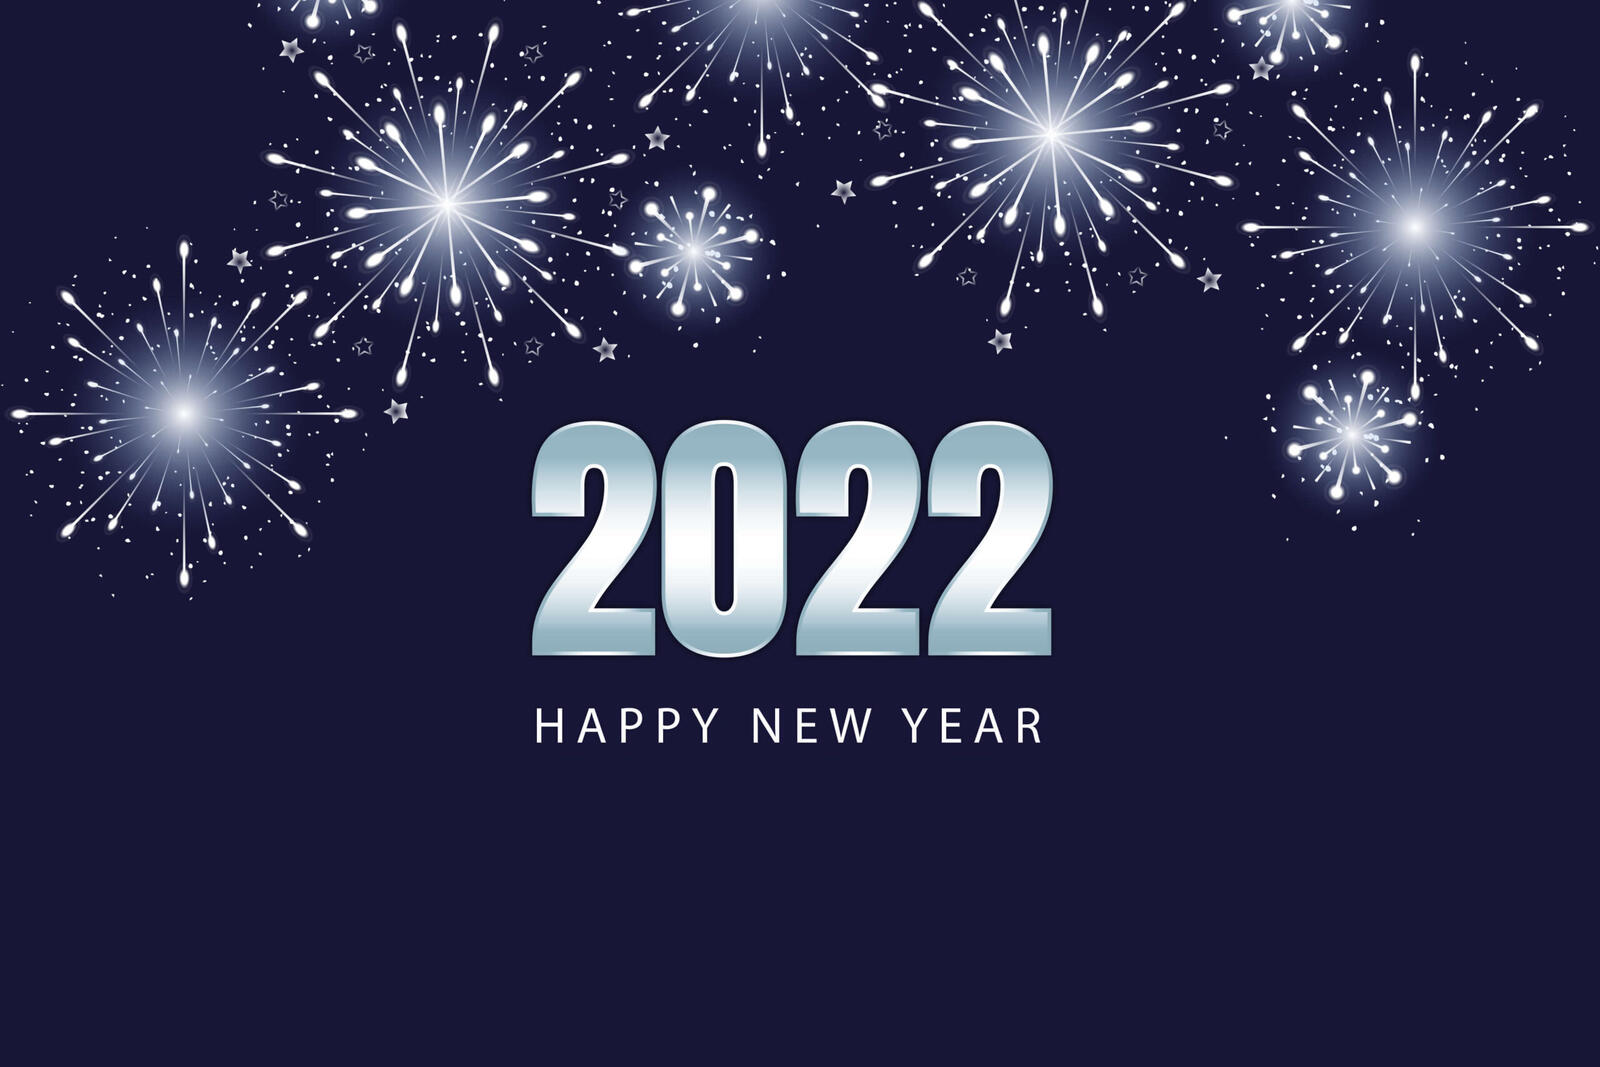 Обои 2022 новый год 2022 салют на рабочий стол